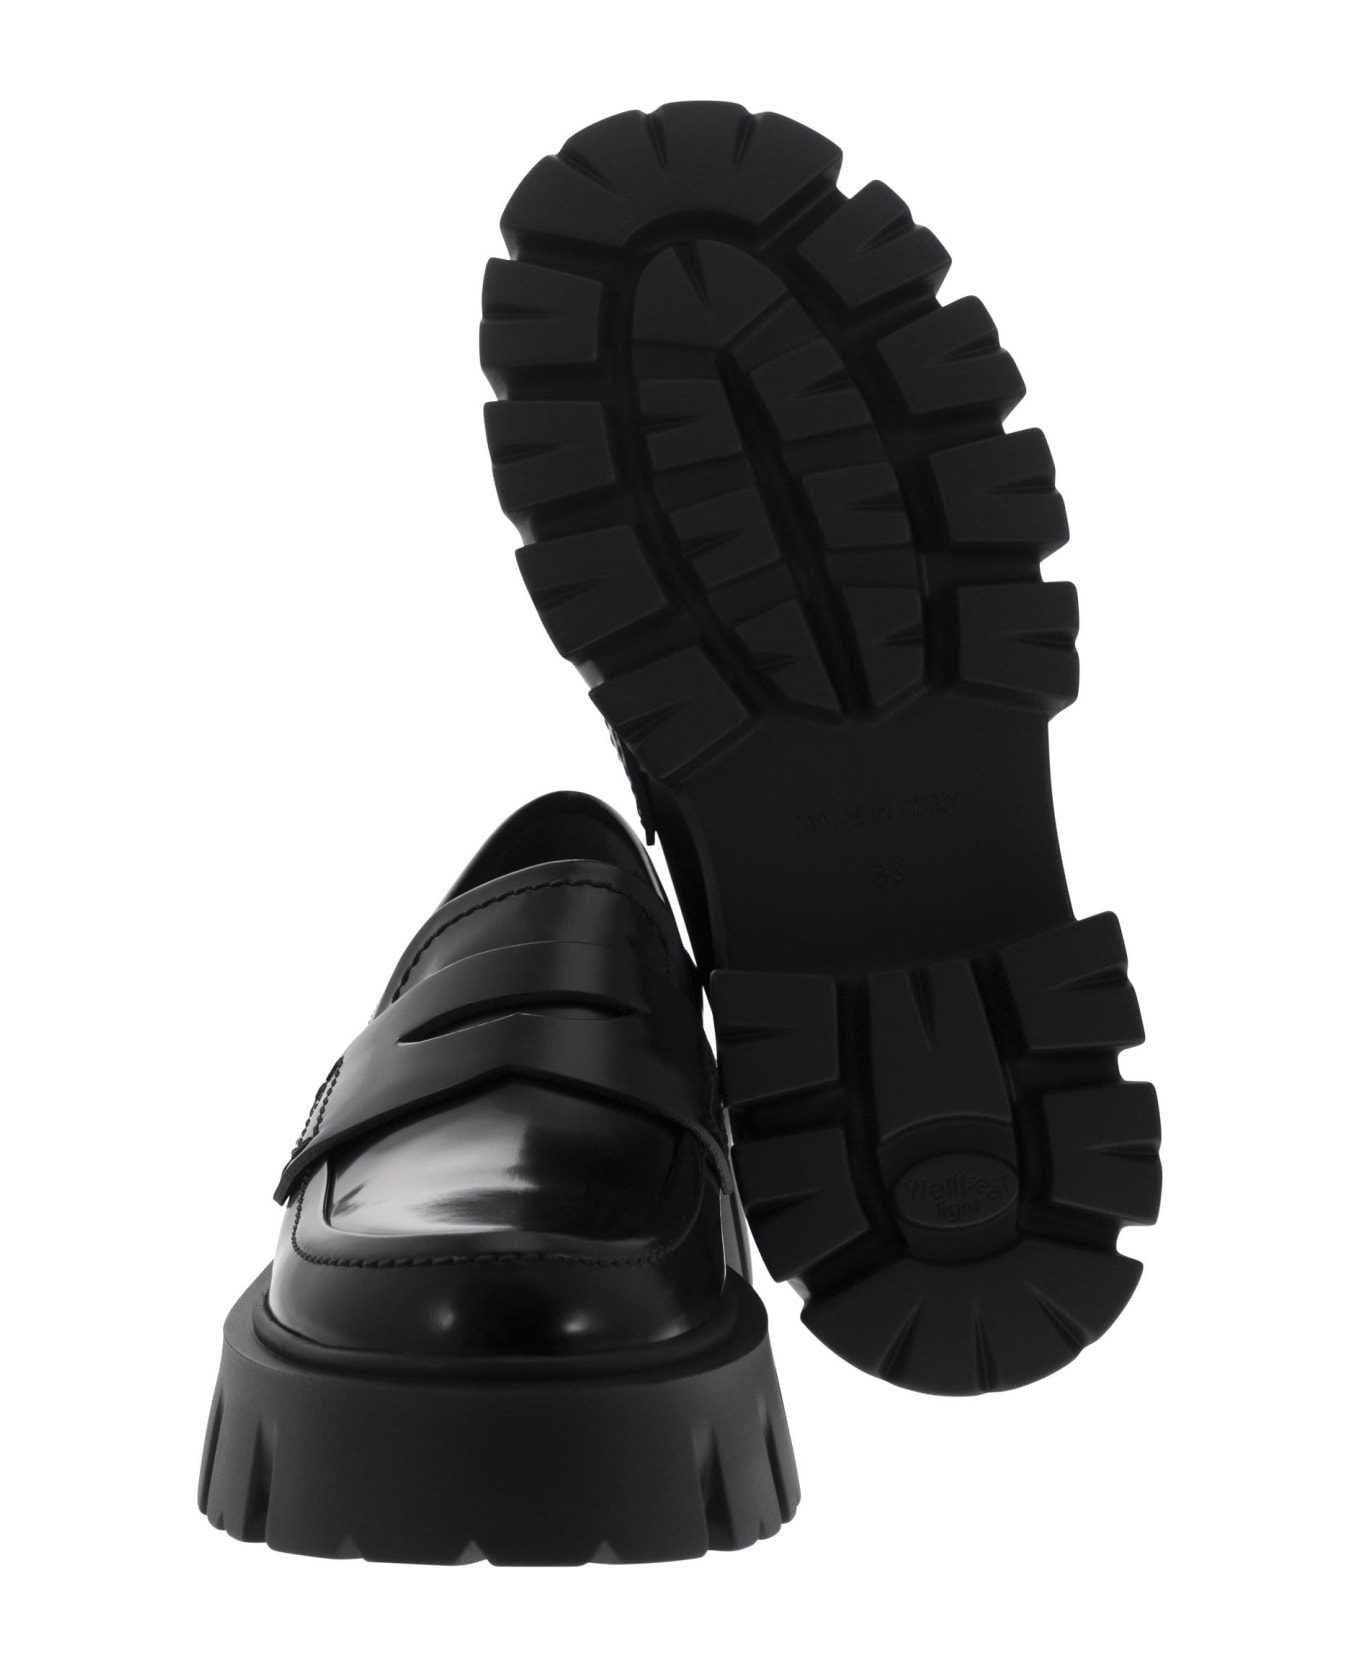 Premiata Ascot - Leather Loafers - Black